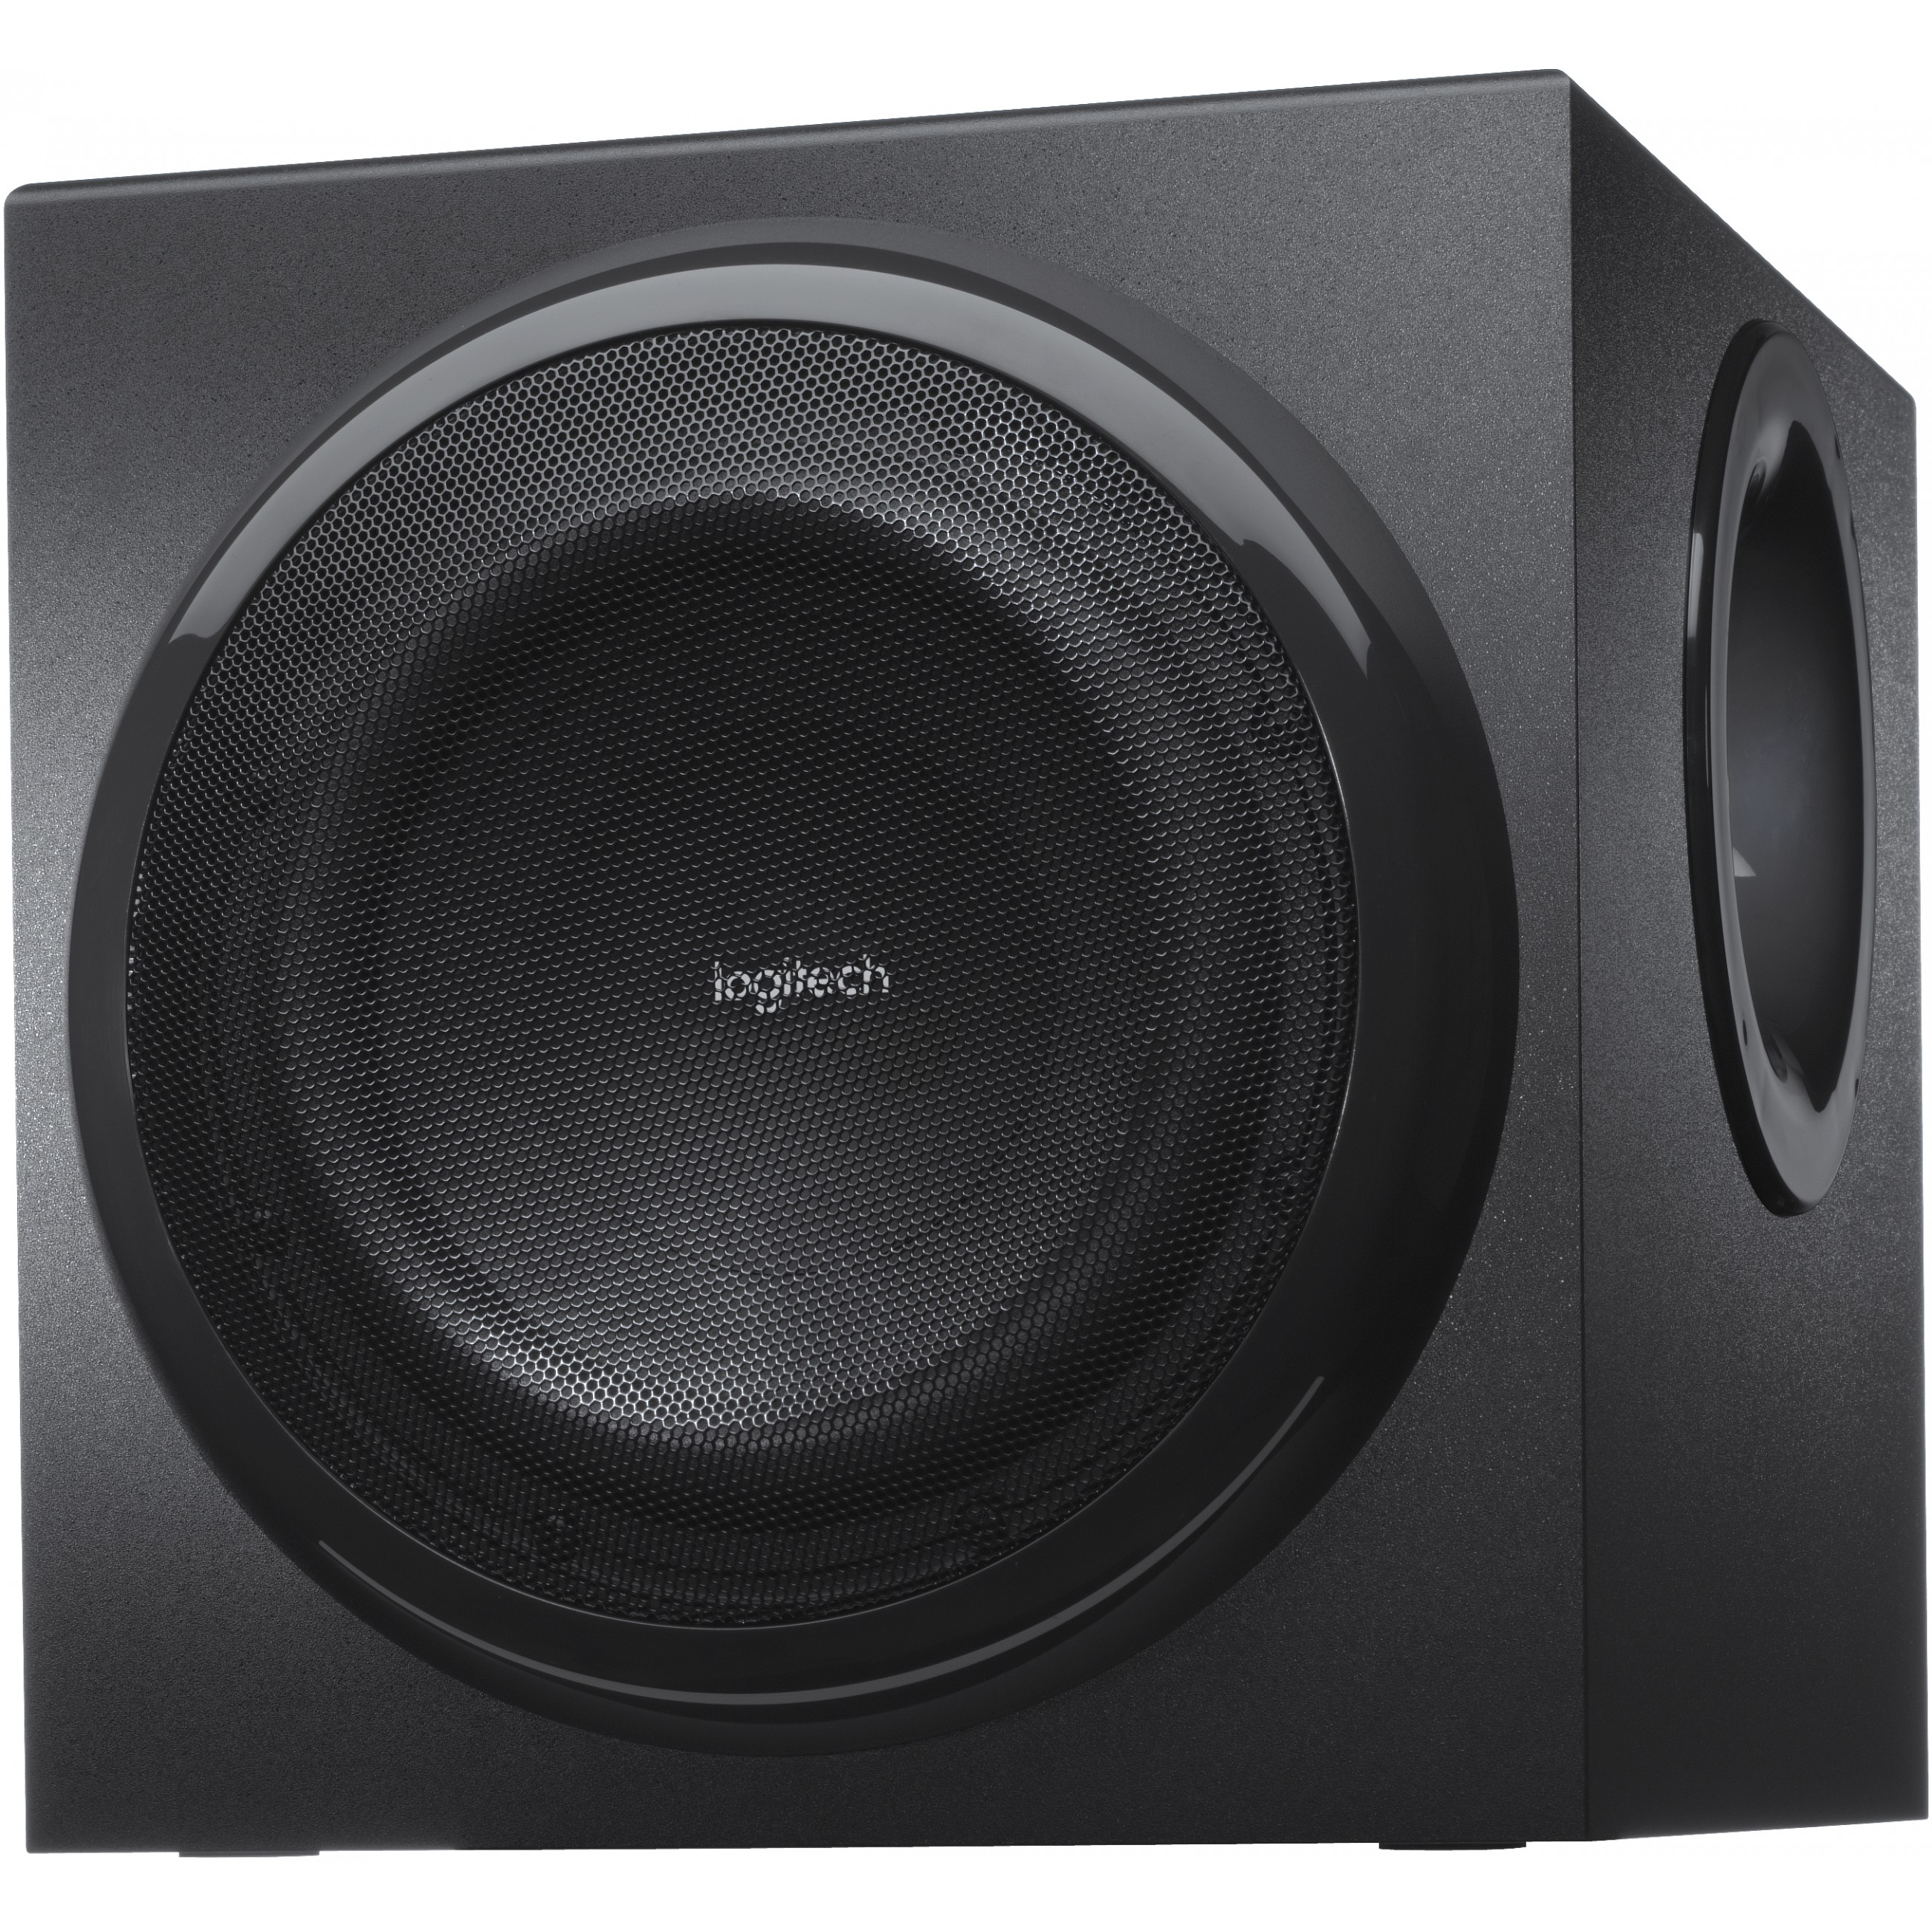 Logitech Z906 Thx Surround Sound 500 W Schwarz 5.1 Kanäle